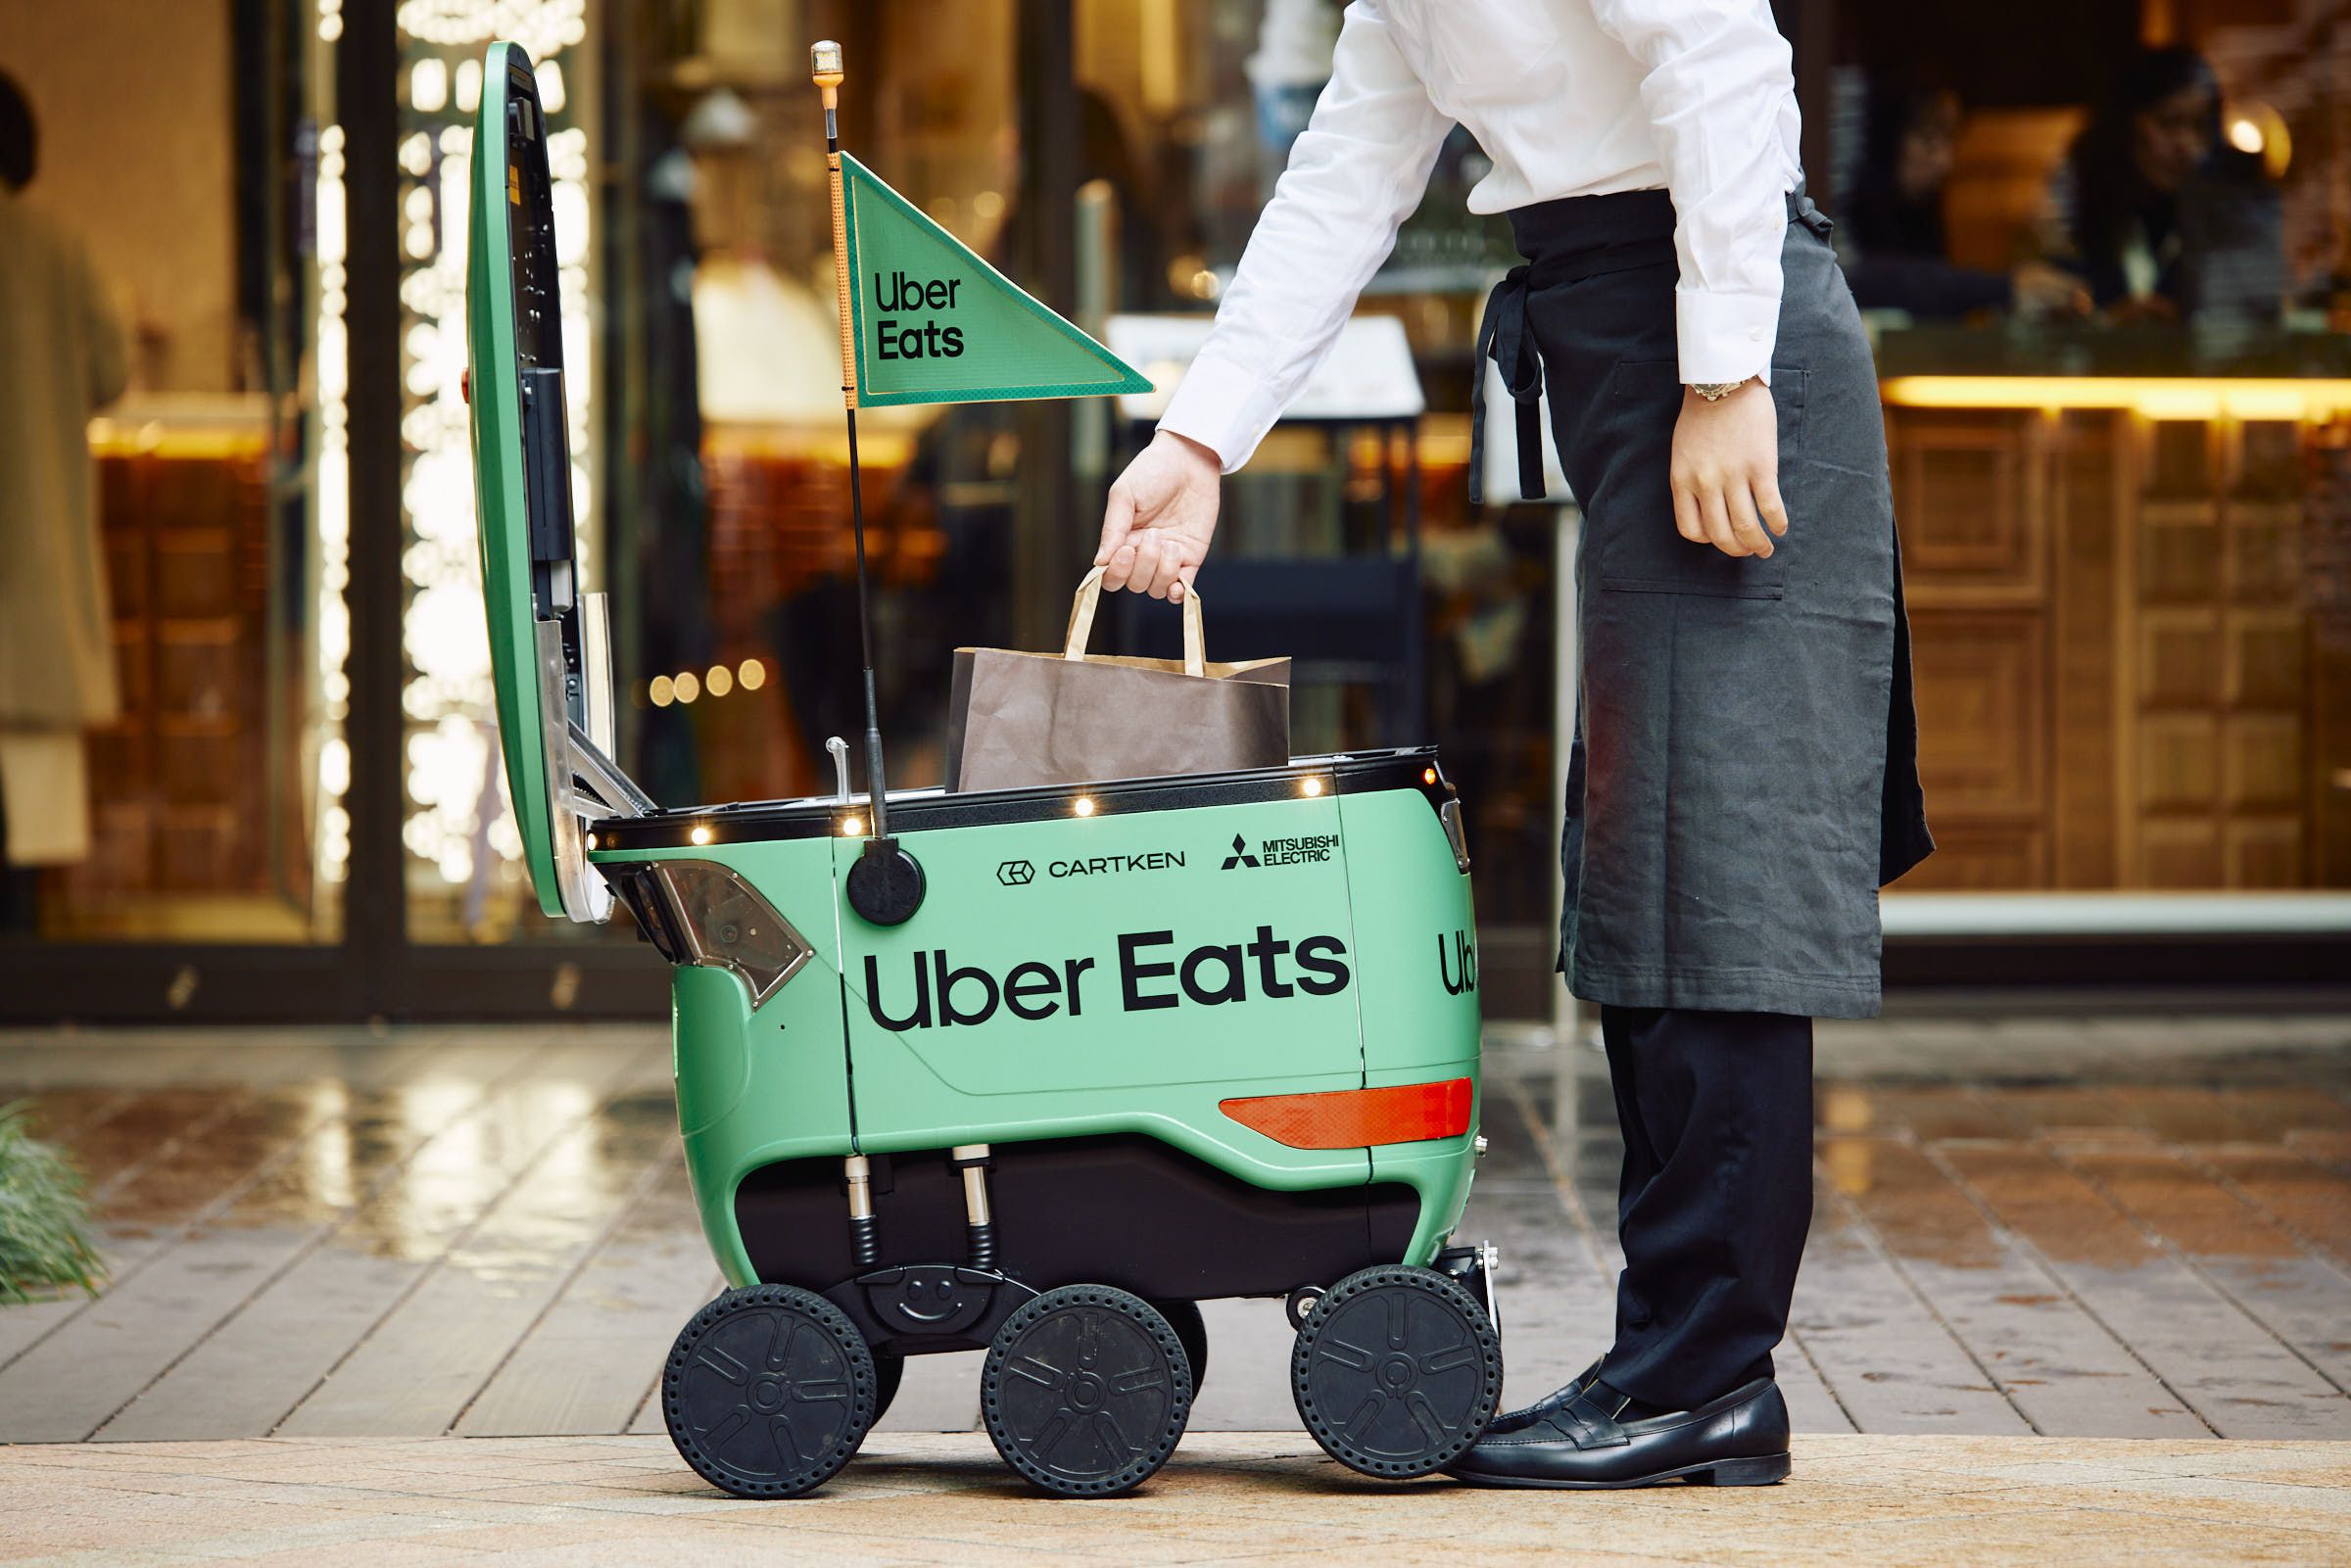 Uber Eats sidewalk delivery robot